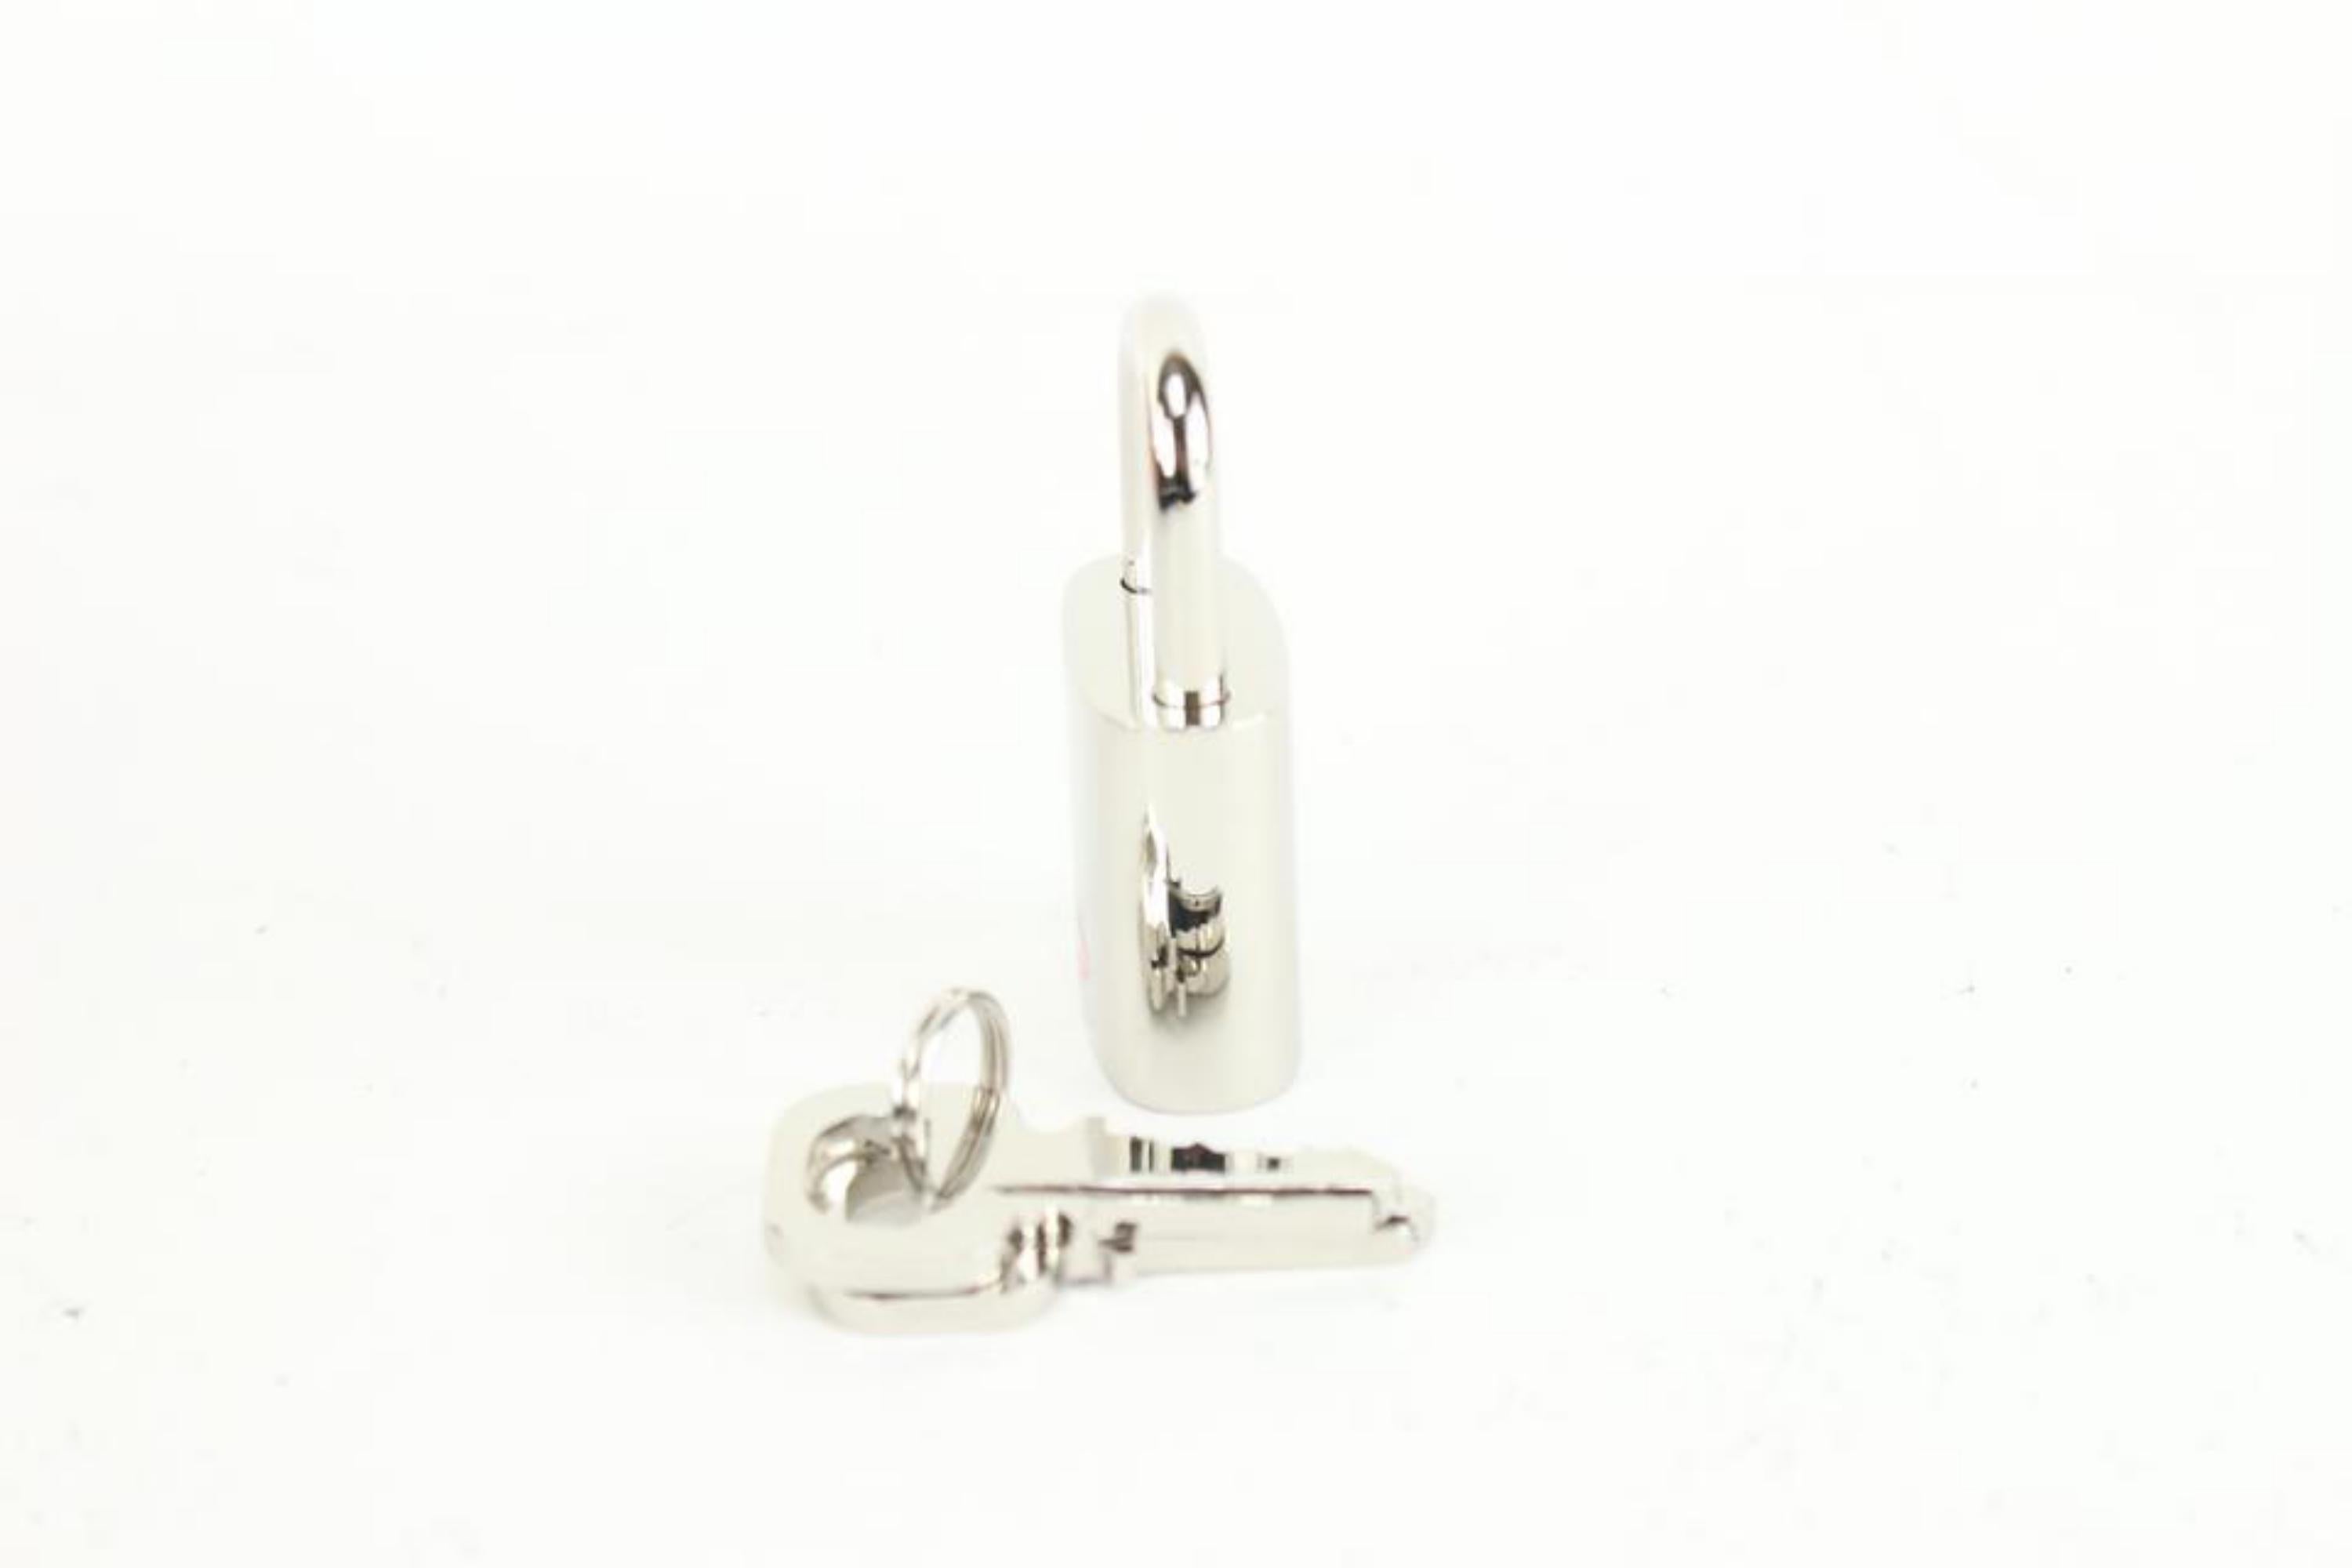 Louis Vuitton TSA De Voyage Padlock Silver and 2 Key Set Lock 57lk63s For Sale 2